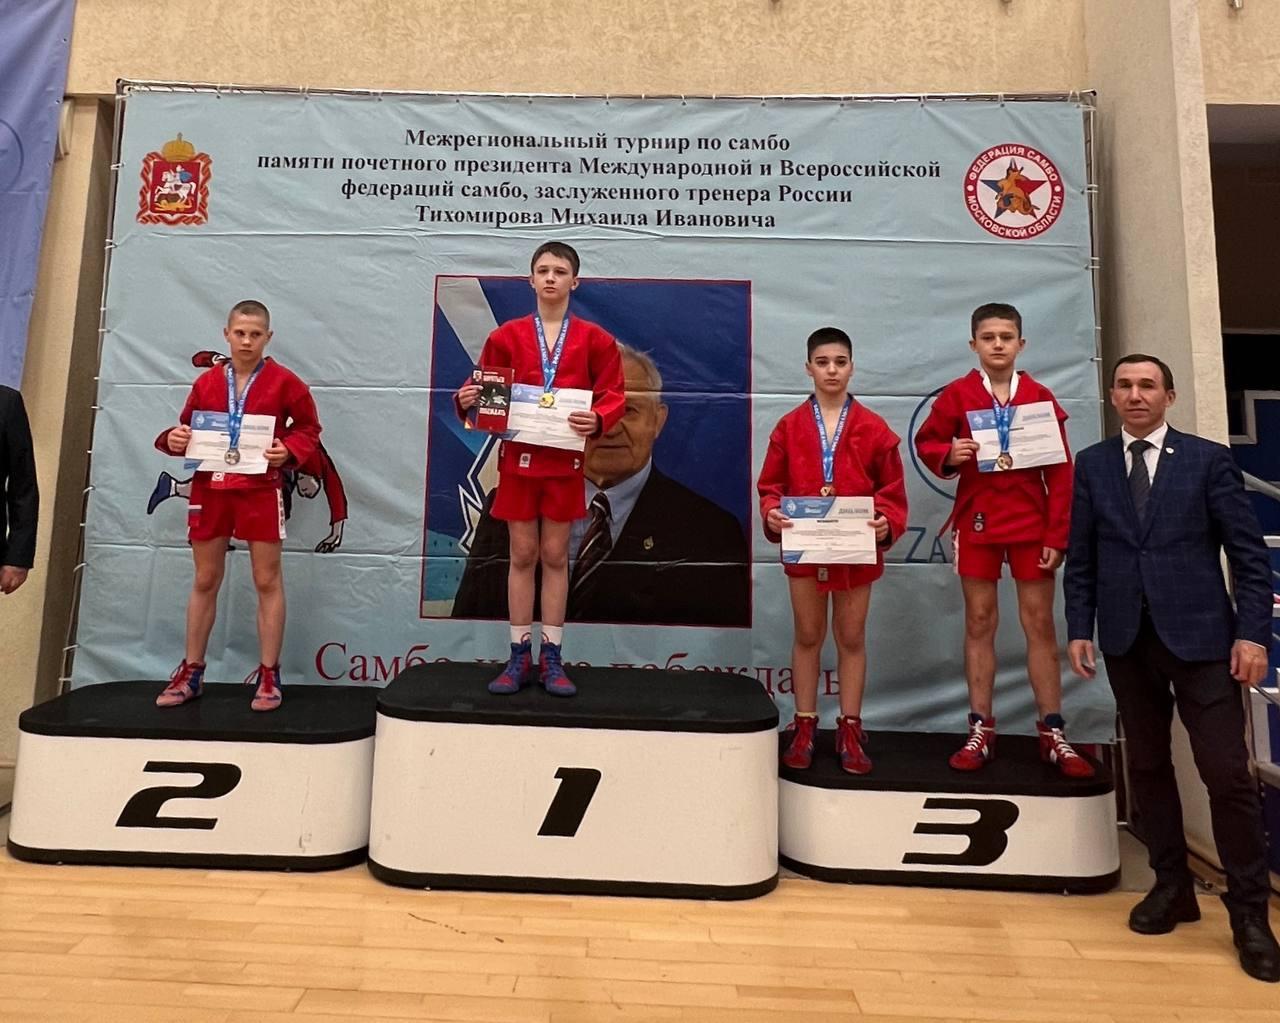 Спортсмены из Королёва завоевали золотую и бронзовые медали на межрегиональном турнире по самбо